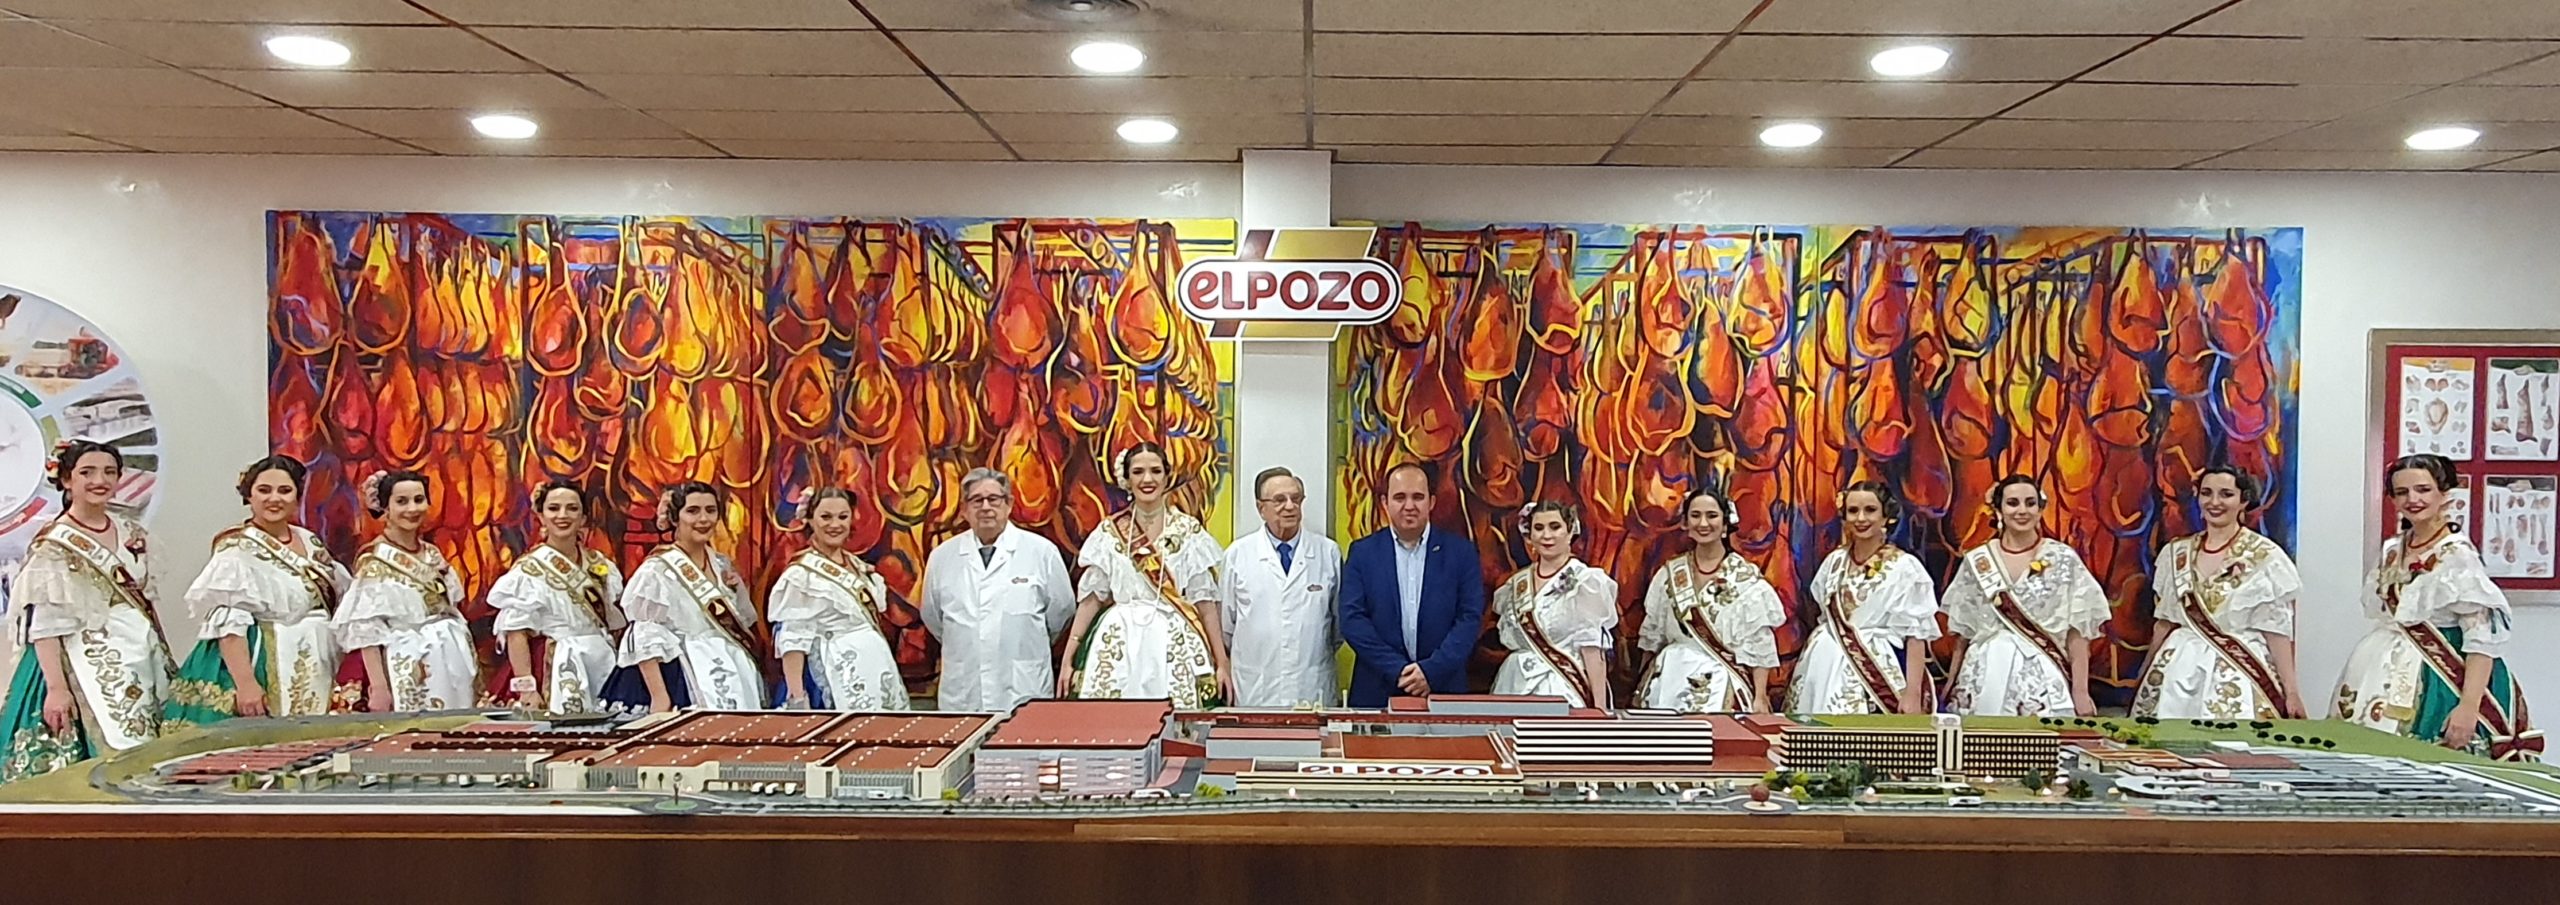 ElPozo Alimentación apoya las tradiciones y patrocina a la Federación de Peñas Huertanas de la Región de Murcia